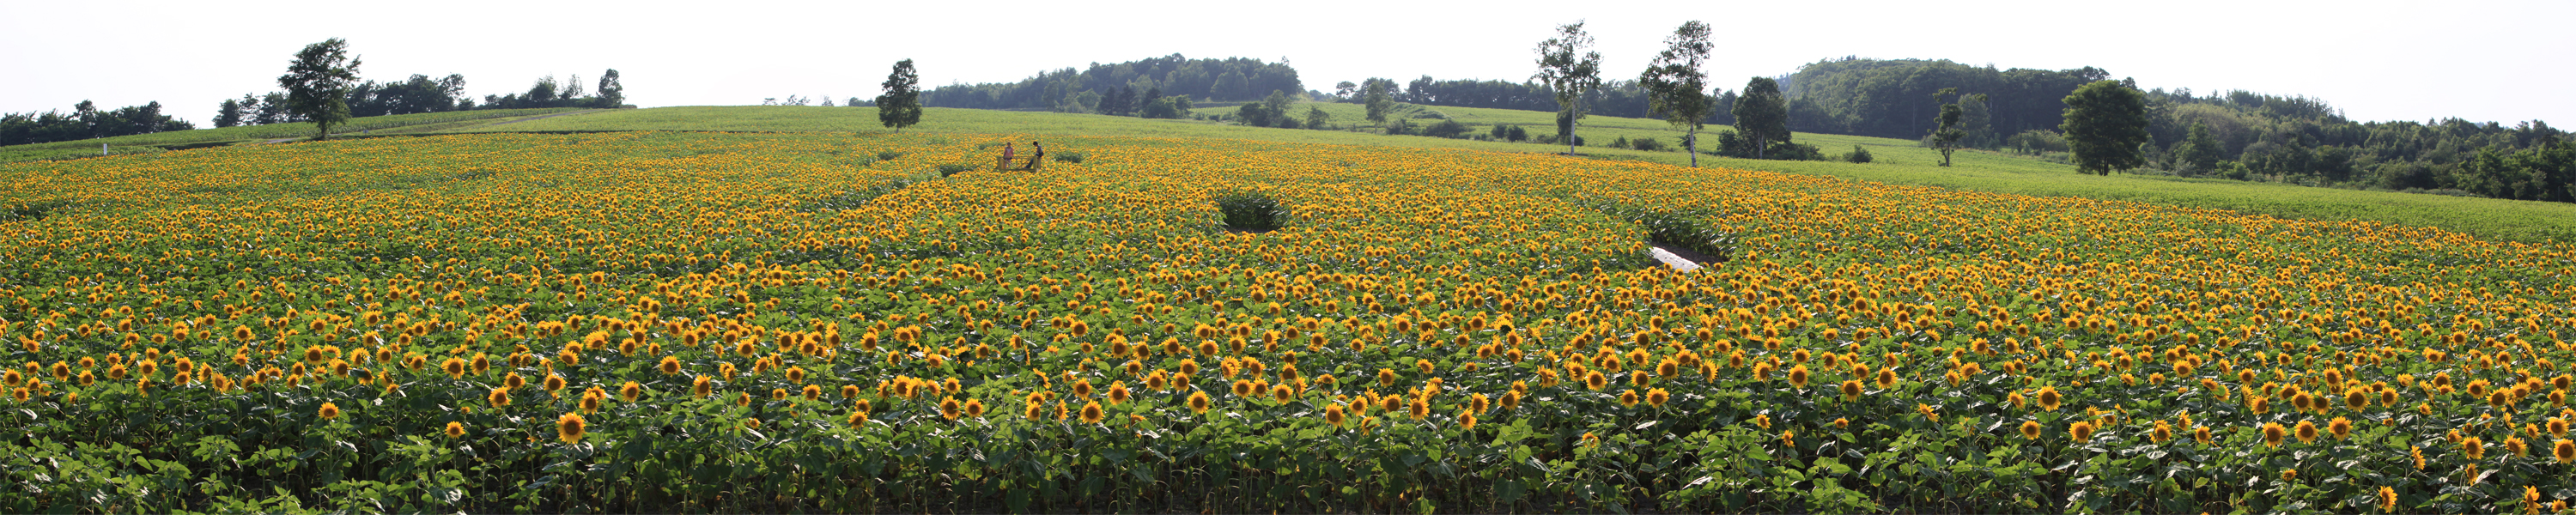 201107-sunflower-pano-01.jpg